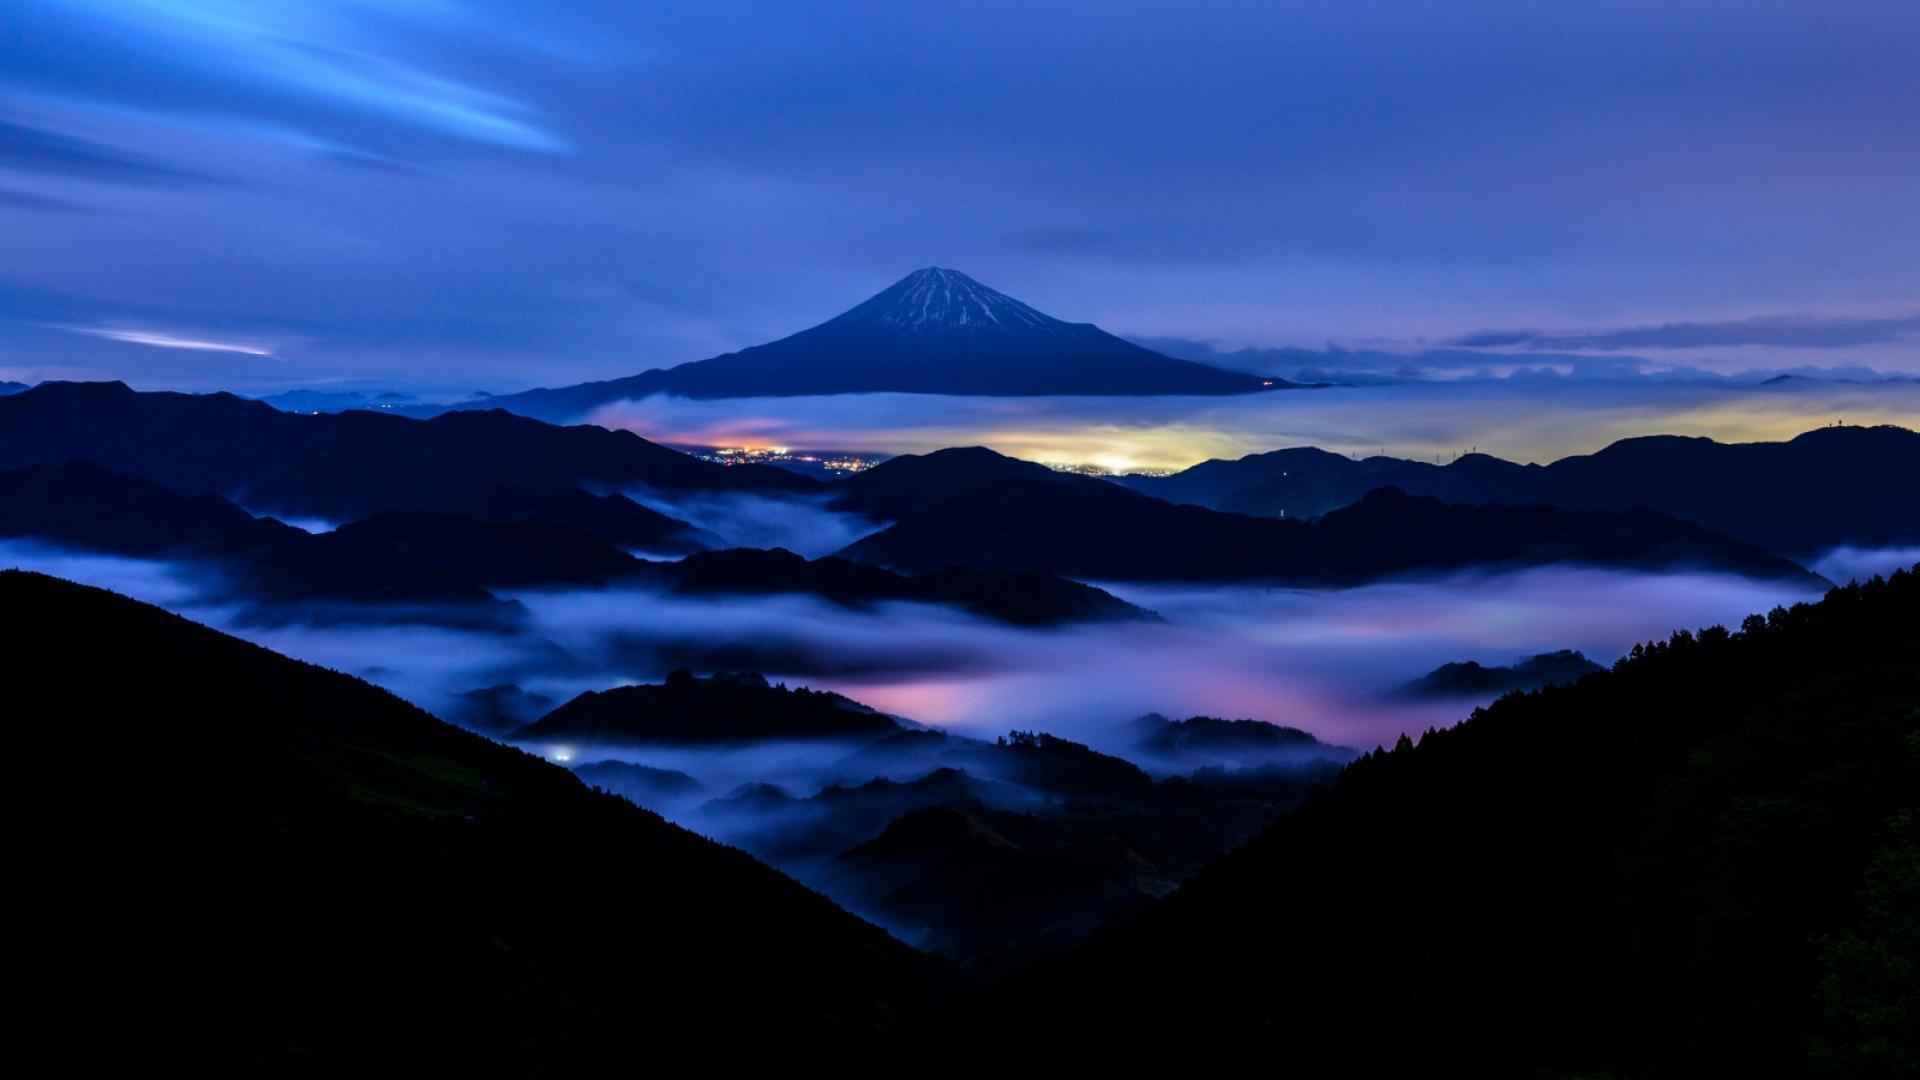 高清日本富士山的磅礴壮丽风景电脑壁纸